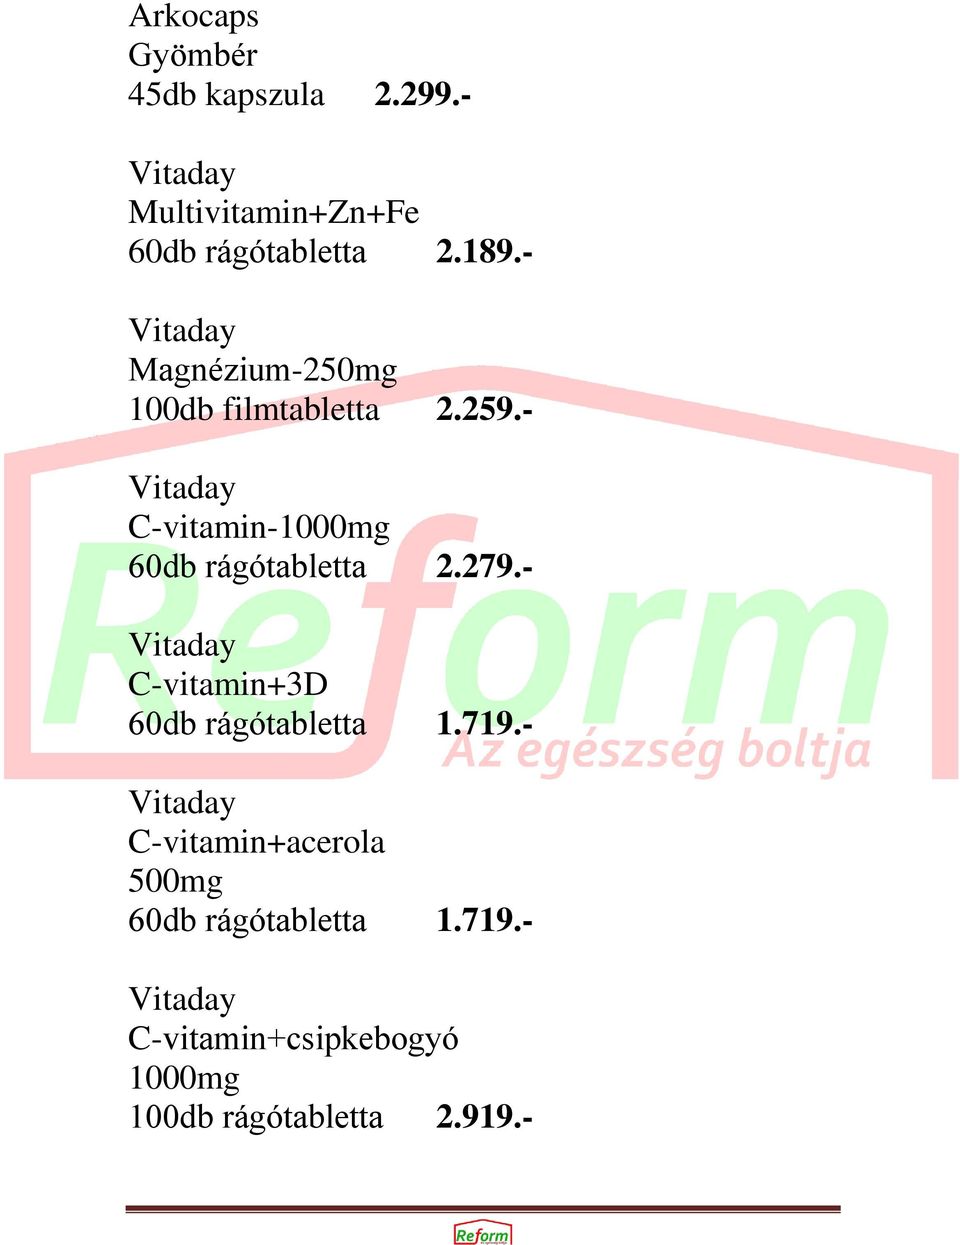 - Vitaday C-vitamin-1000mg 60db rágótabletta 2.279.